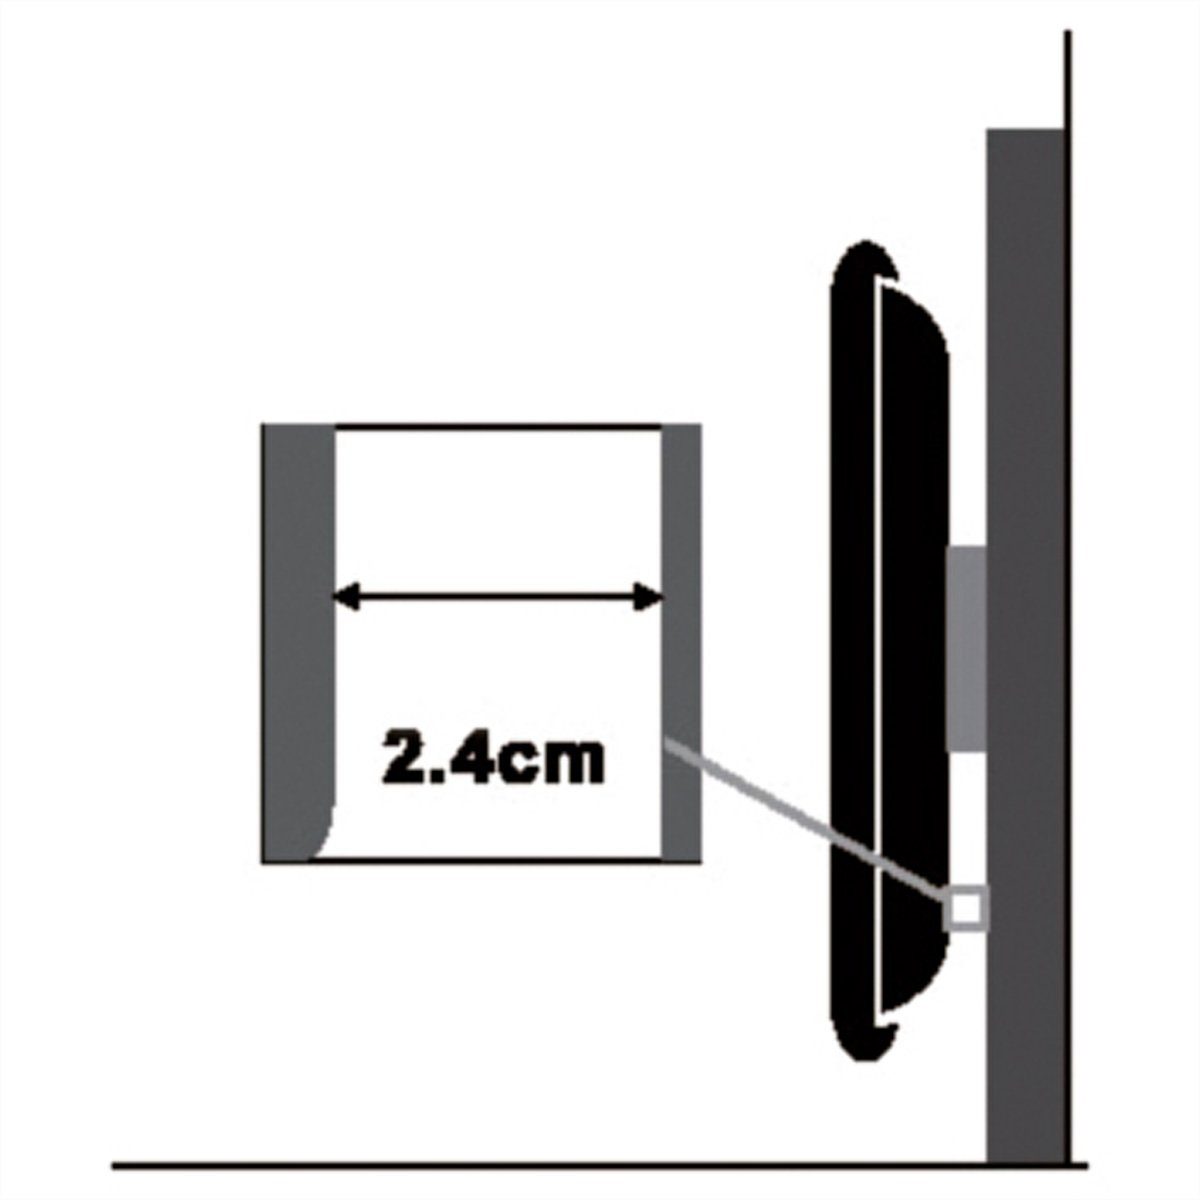 kg) (VESA TV-Monitorwandhalterung TV-Wandhalterung, 700x500, 80 VALUE